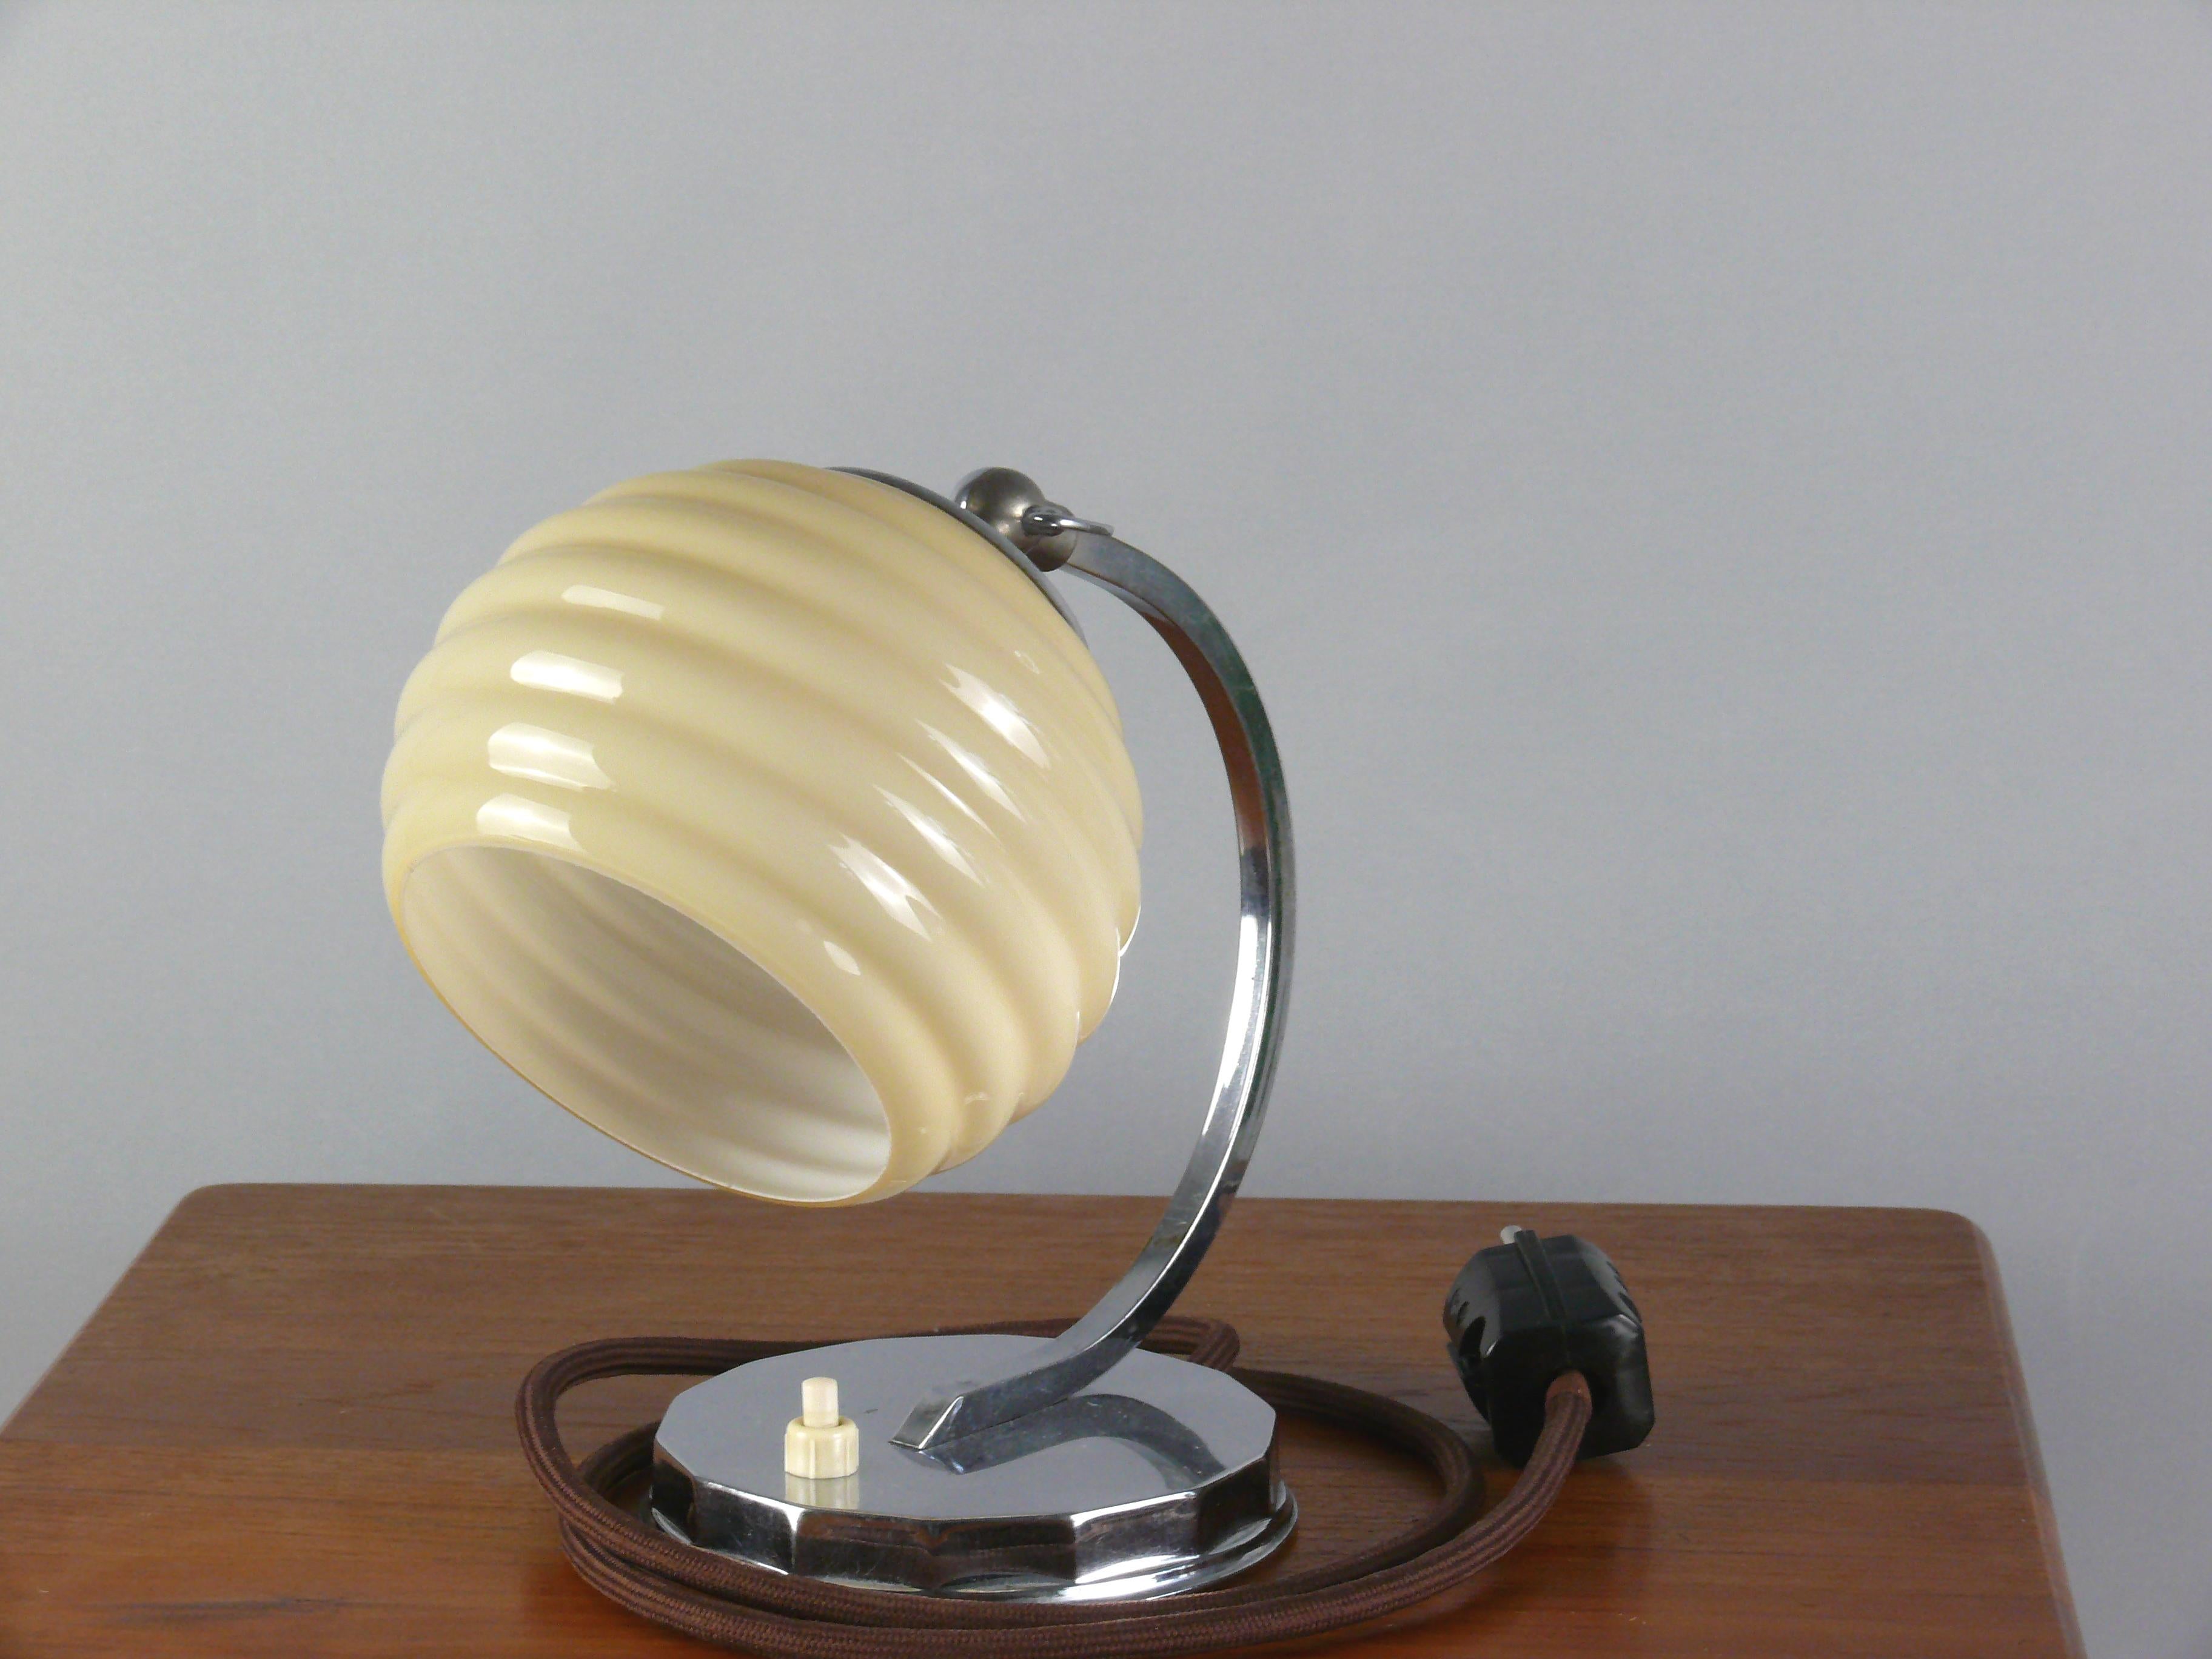 Lampe de table Art Deco, probablement des années 1930 en bon état. La lampe impressionne par sa base ronde chromée brillante et son abat-jour décoratif. La lampe est équipée d'une douille en laiton E 27 et la hauteur de l'abat-jour peut être réglée